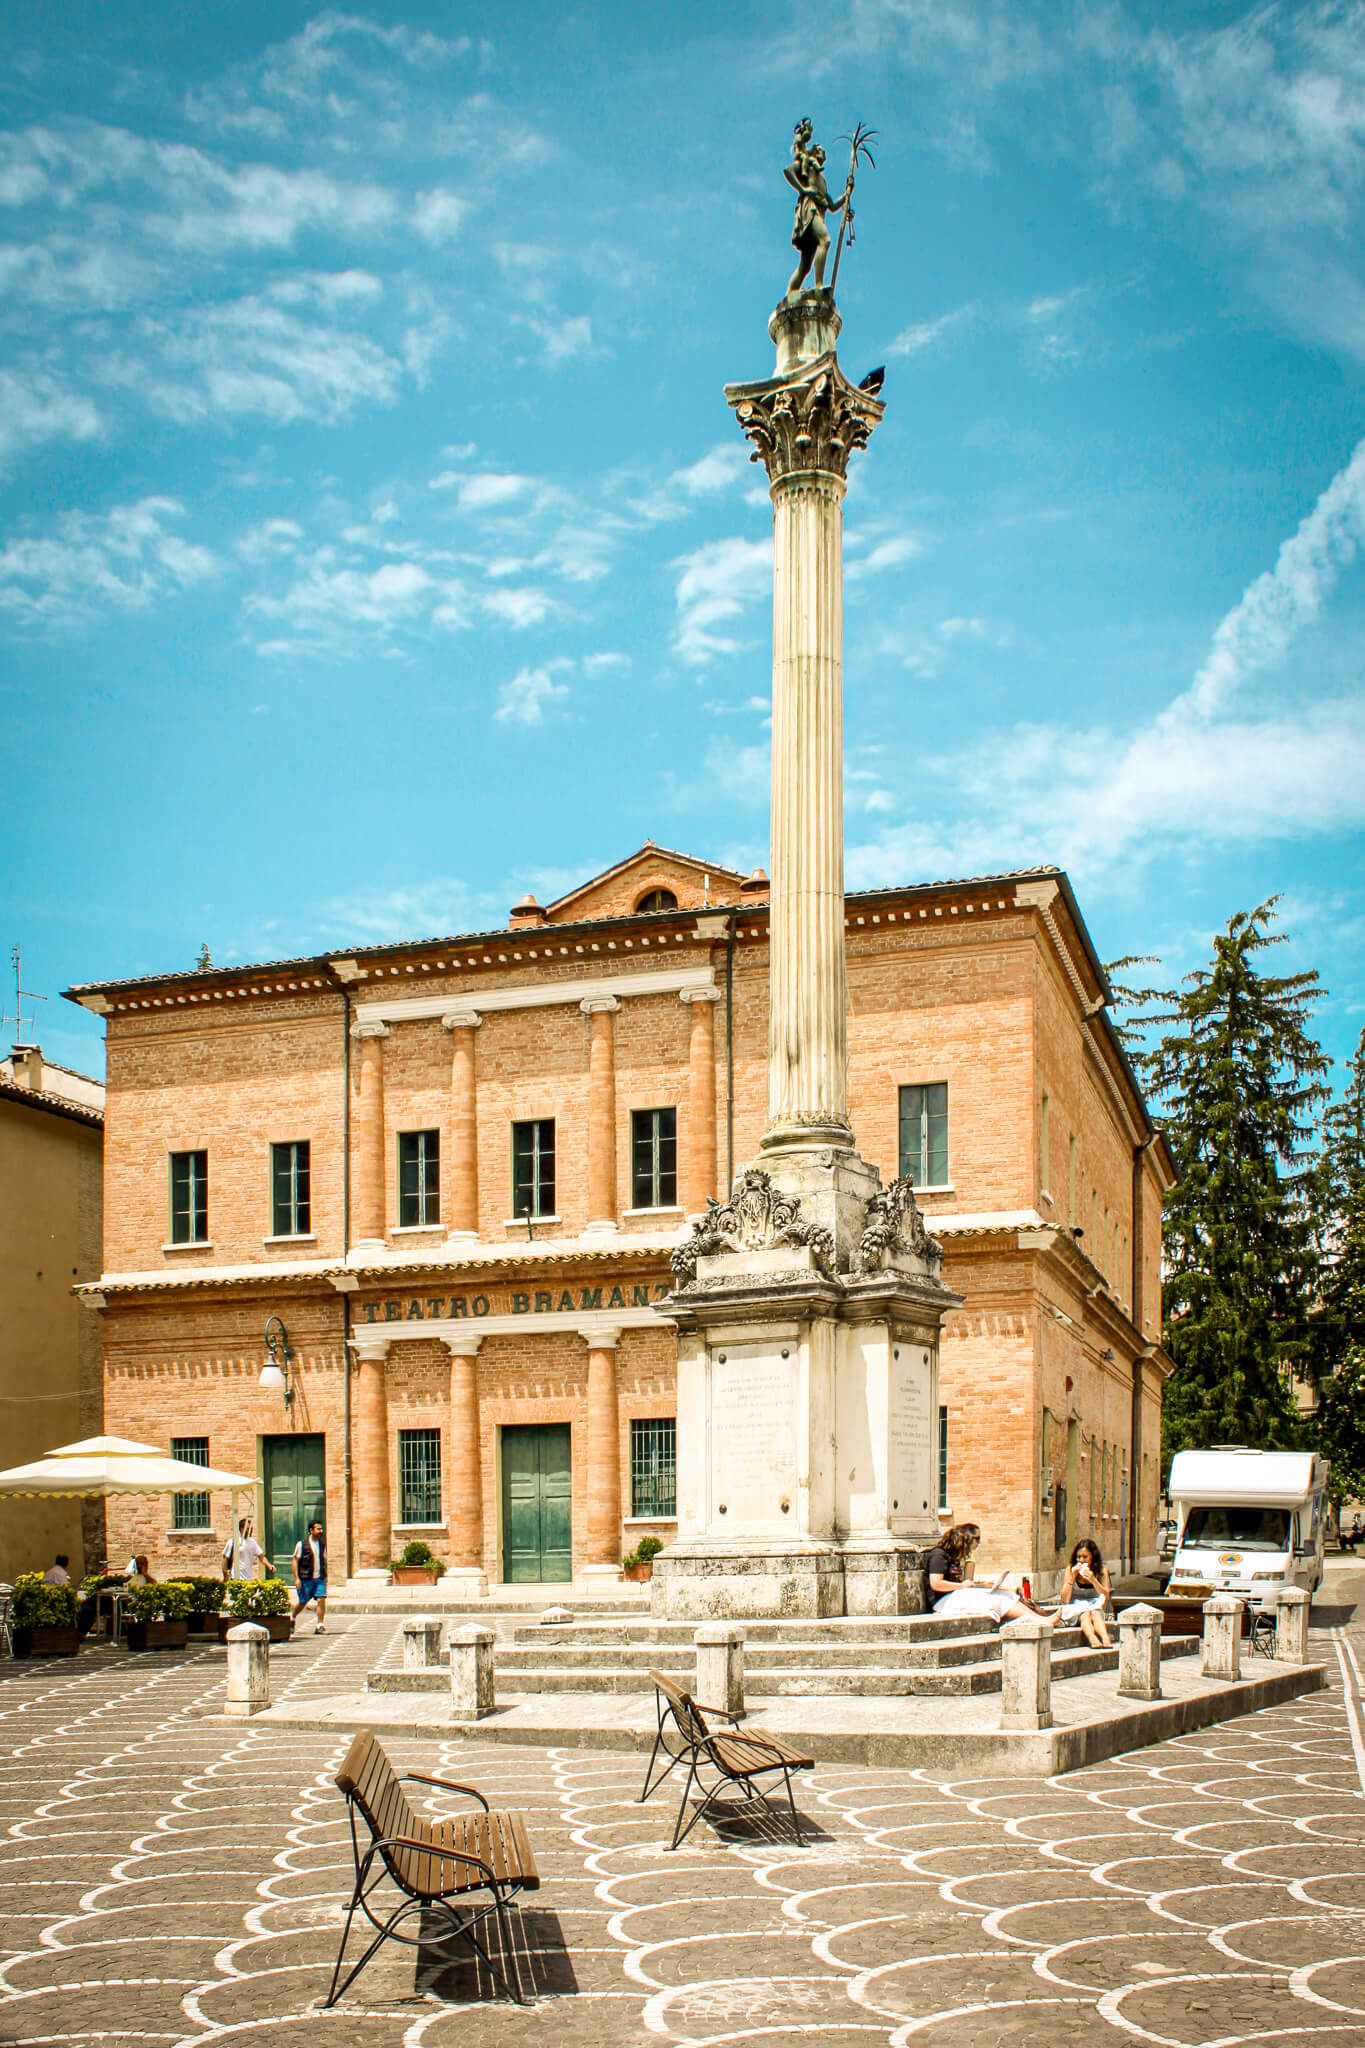 The obelisk in Piazza San Cristoforo in Urbania, Italy